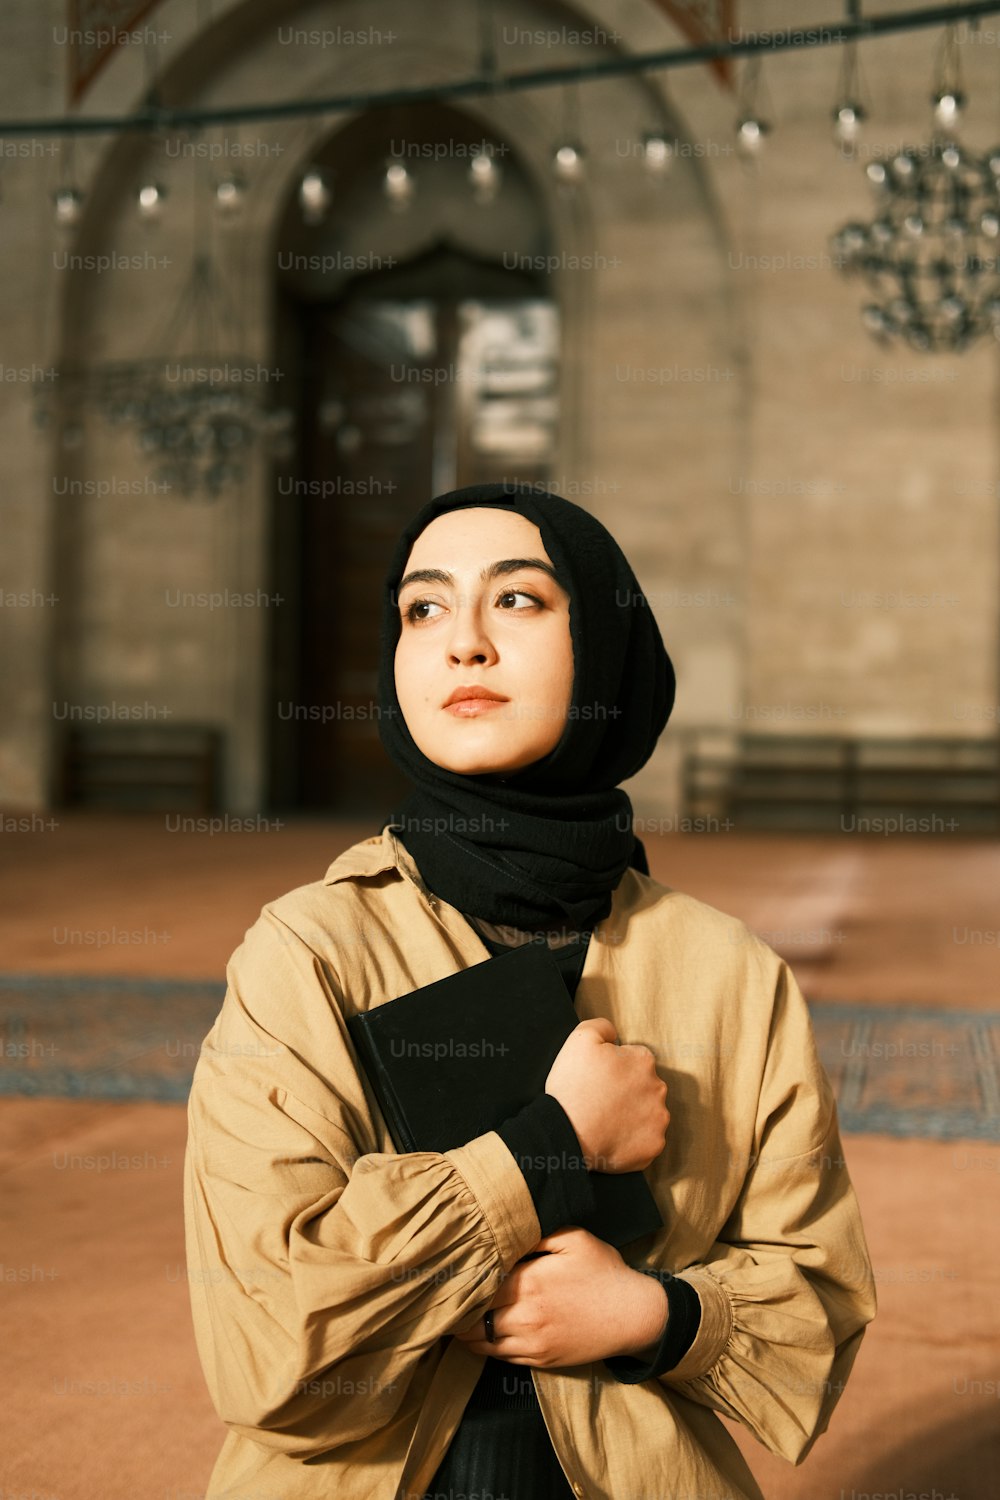 Eine Frau mit Hijab steht in einem Gebäude